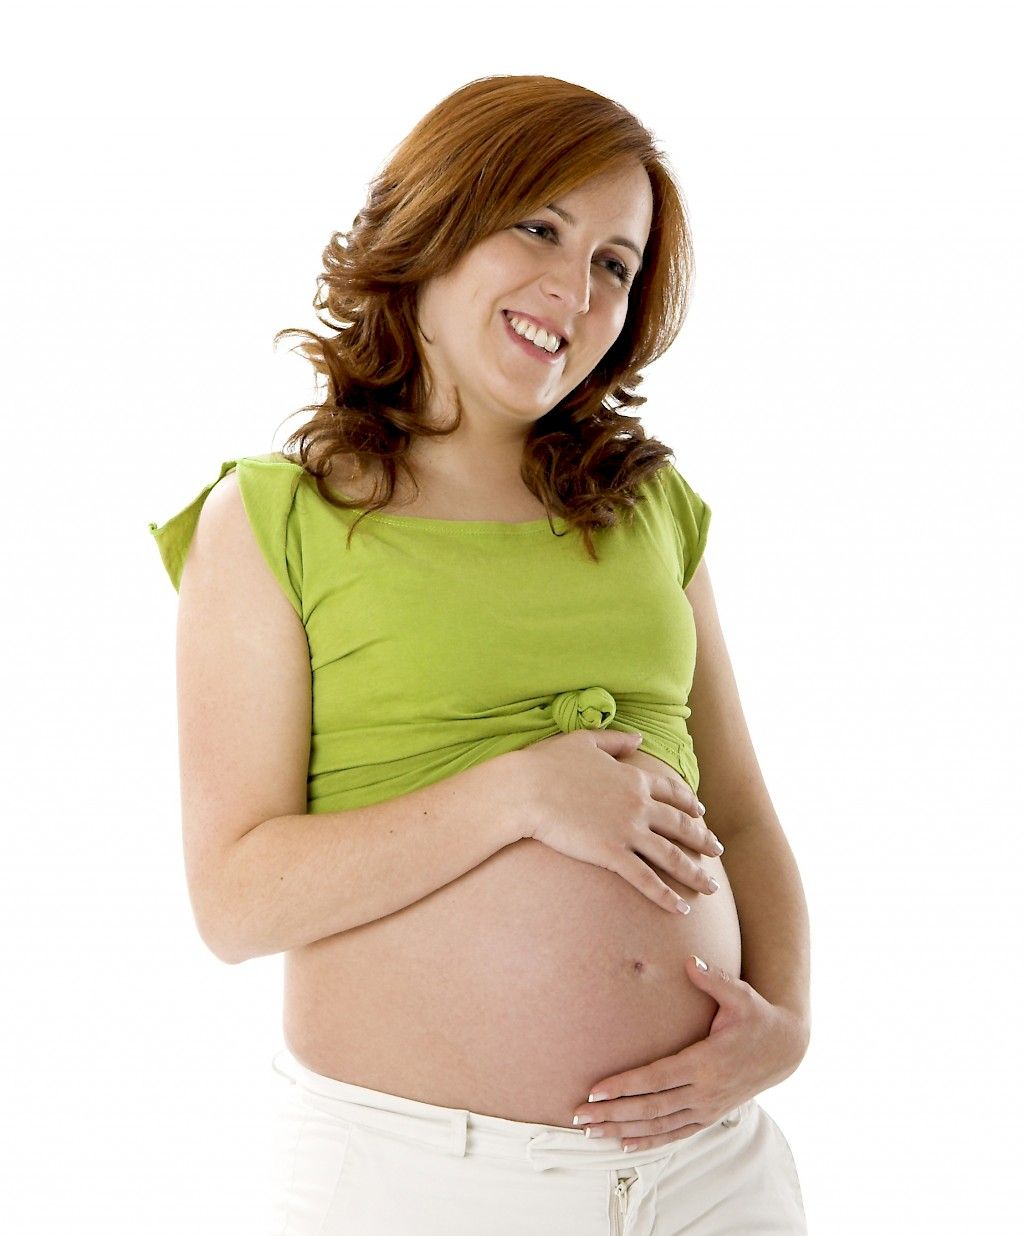 Liikunta raskausaikana pienentää vauvan lihavuusriskiä